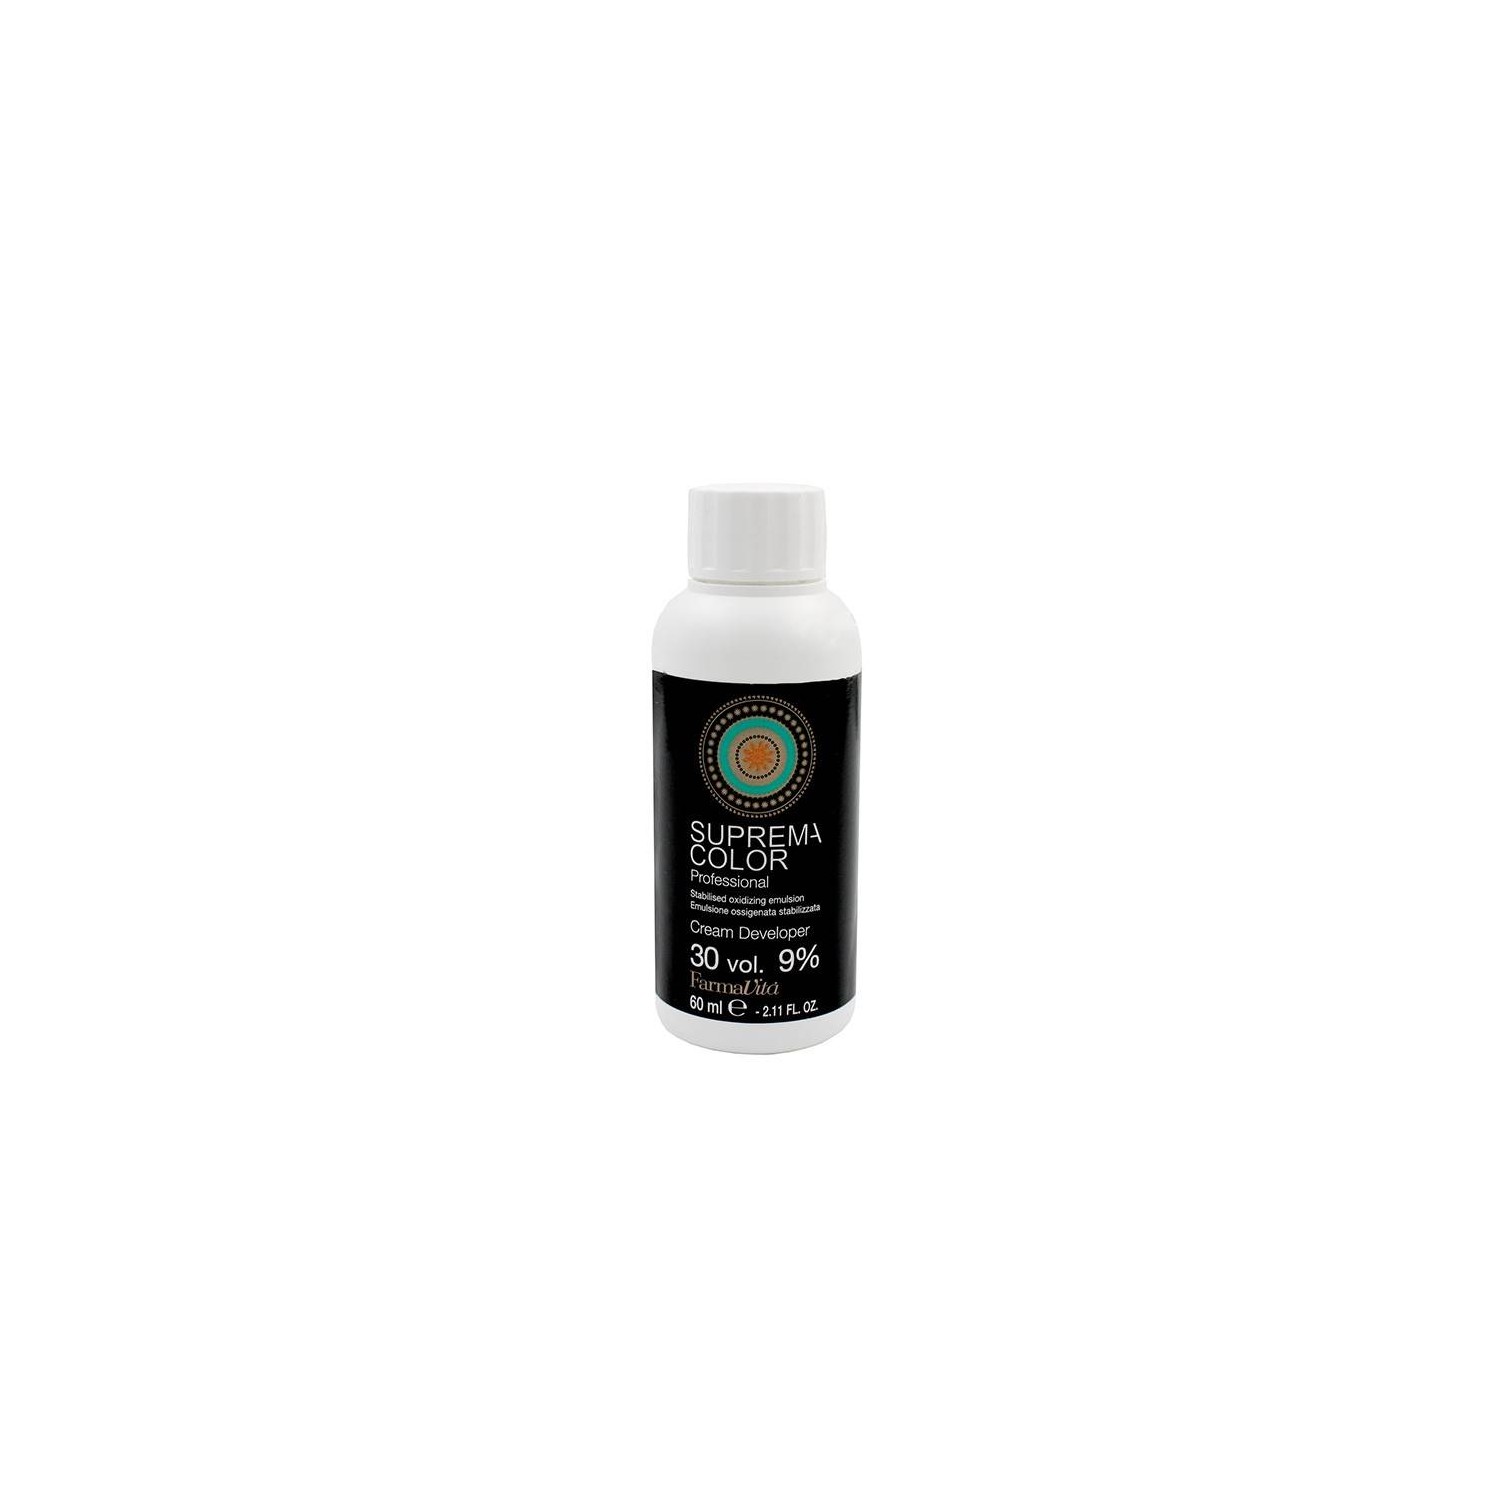 Farmavita Suprema Color Oxidante 30vol (9%) 60 ml